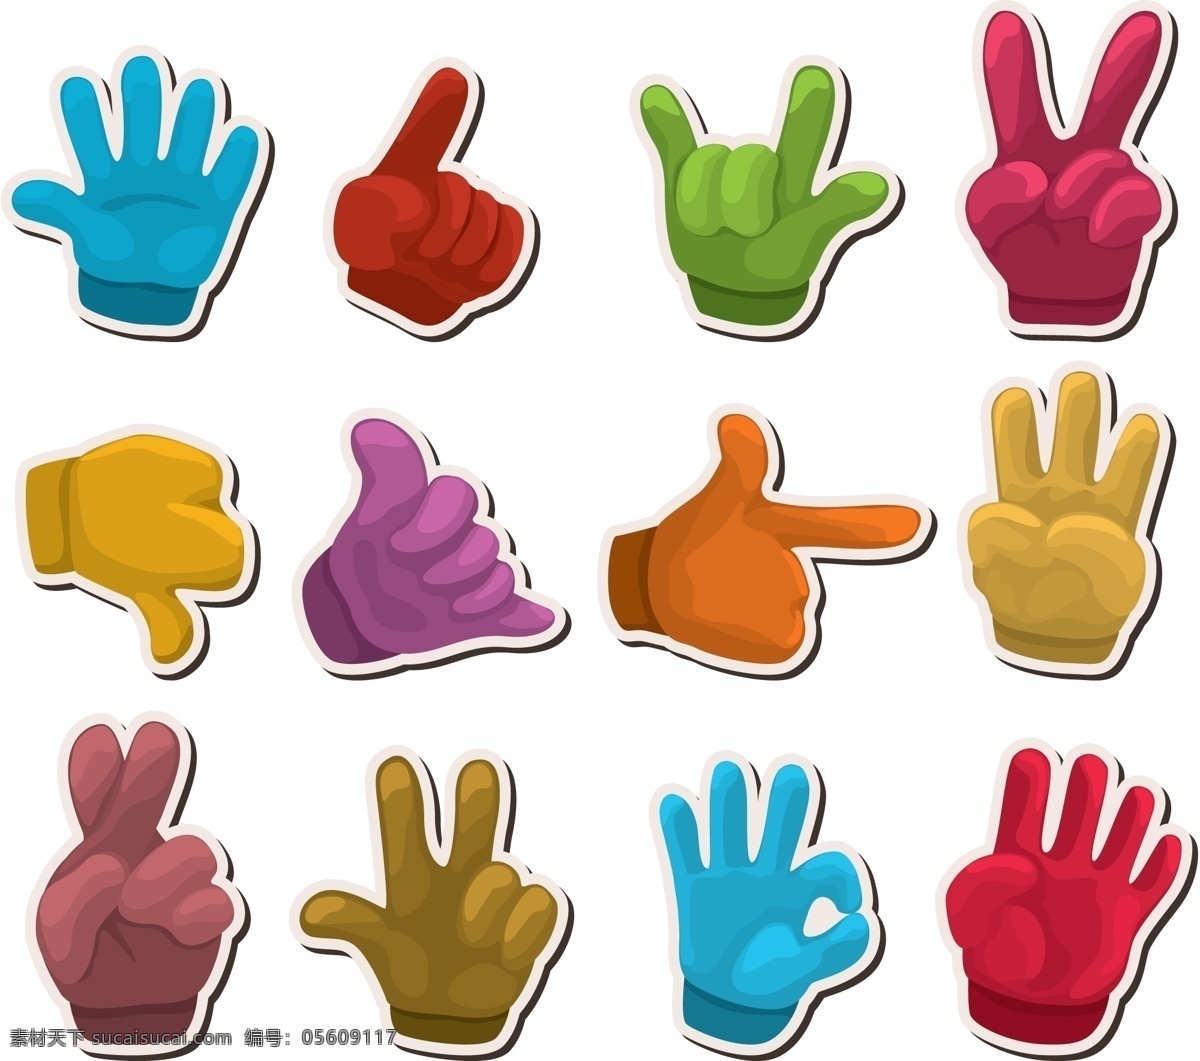 手势 形状 标贴 矢量素材 手型 手掌 手指 贴纸 矢量图 其他矢量图